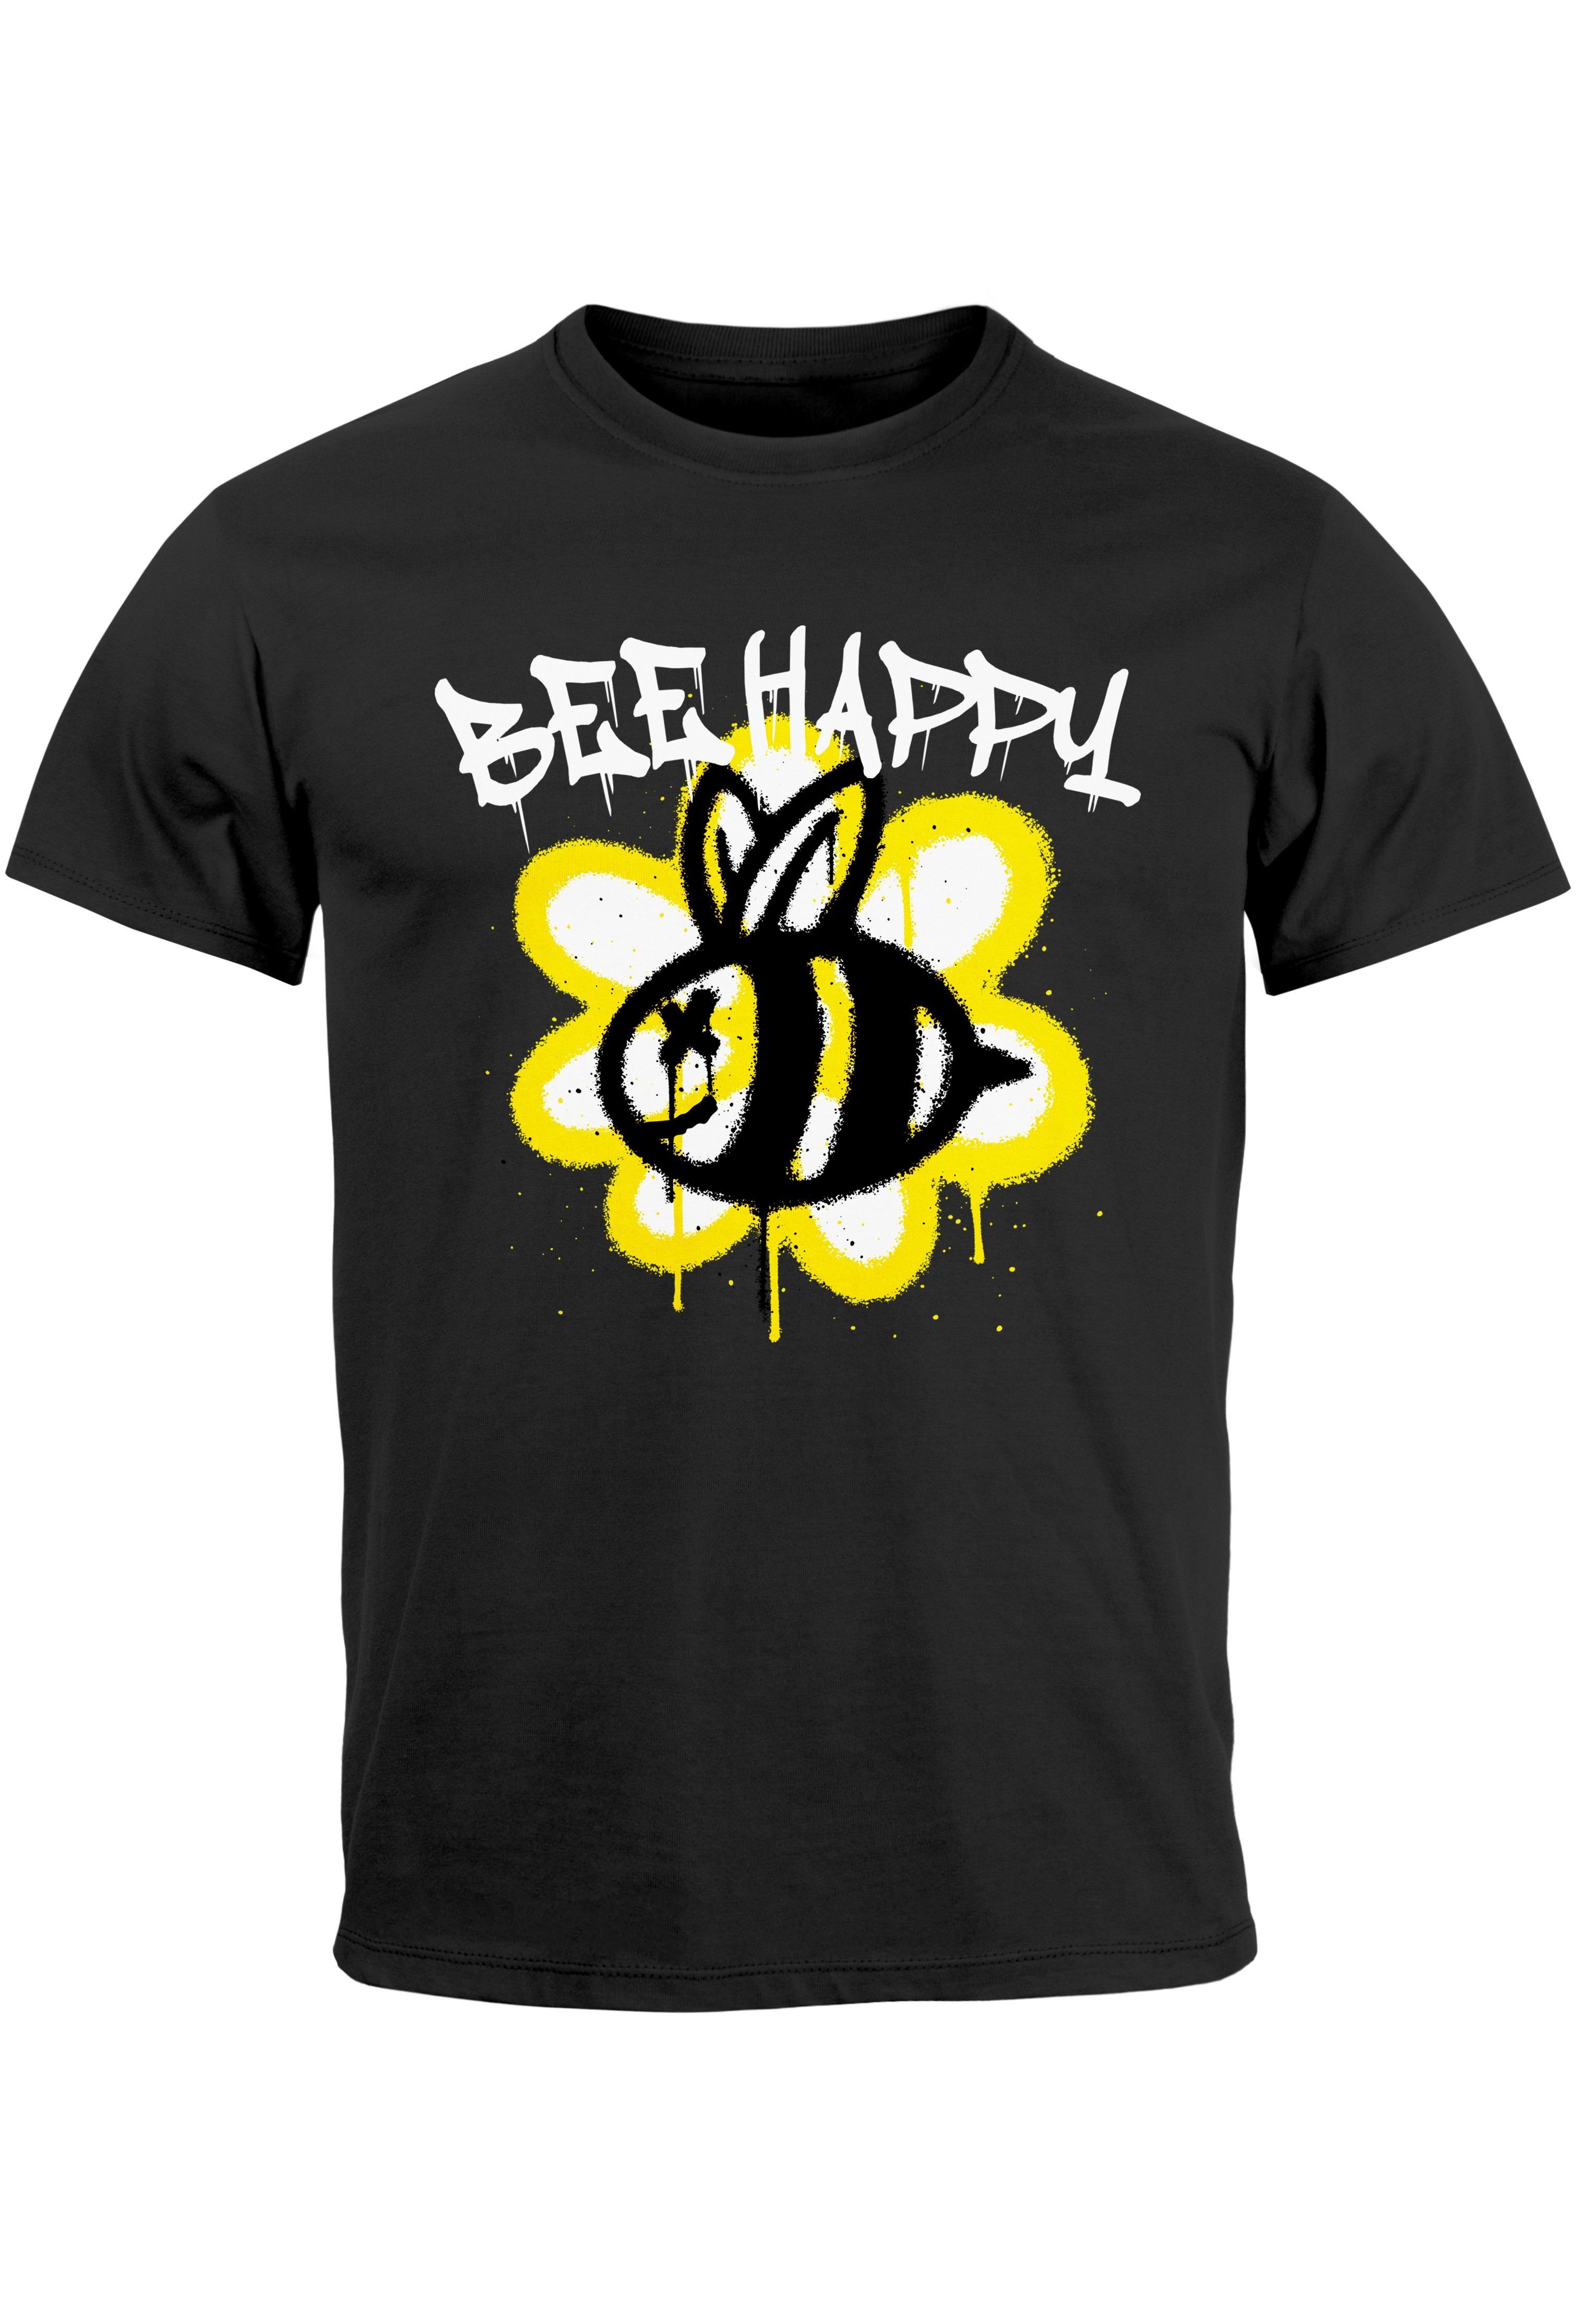 Print-Shirt Graffiti Neverless Print schwarz Aufdruck Herren Blume Biene T-Shirt Bee Happy mit SchriftzugFashi